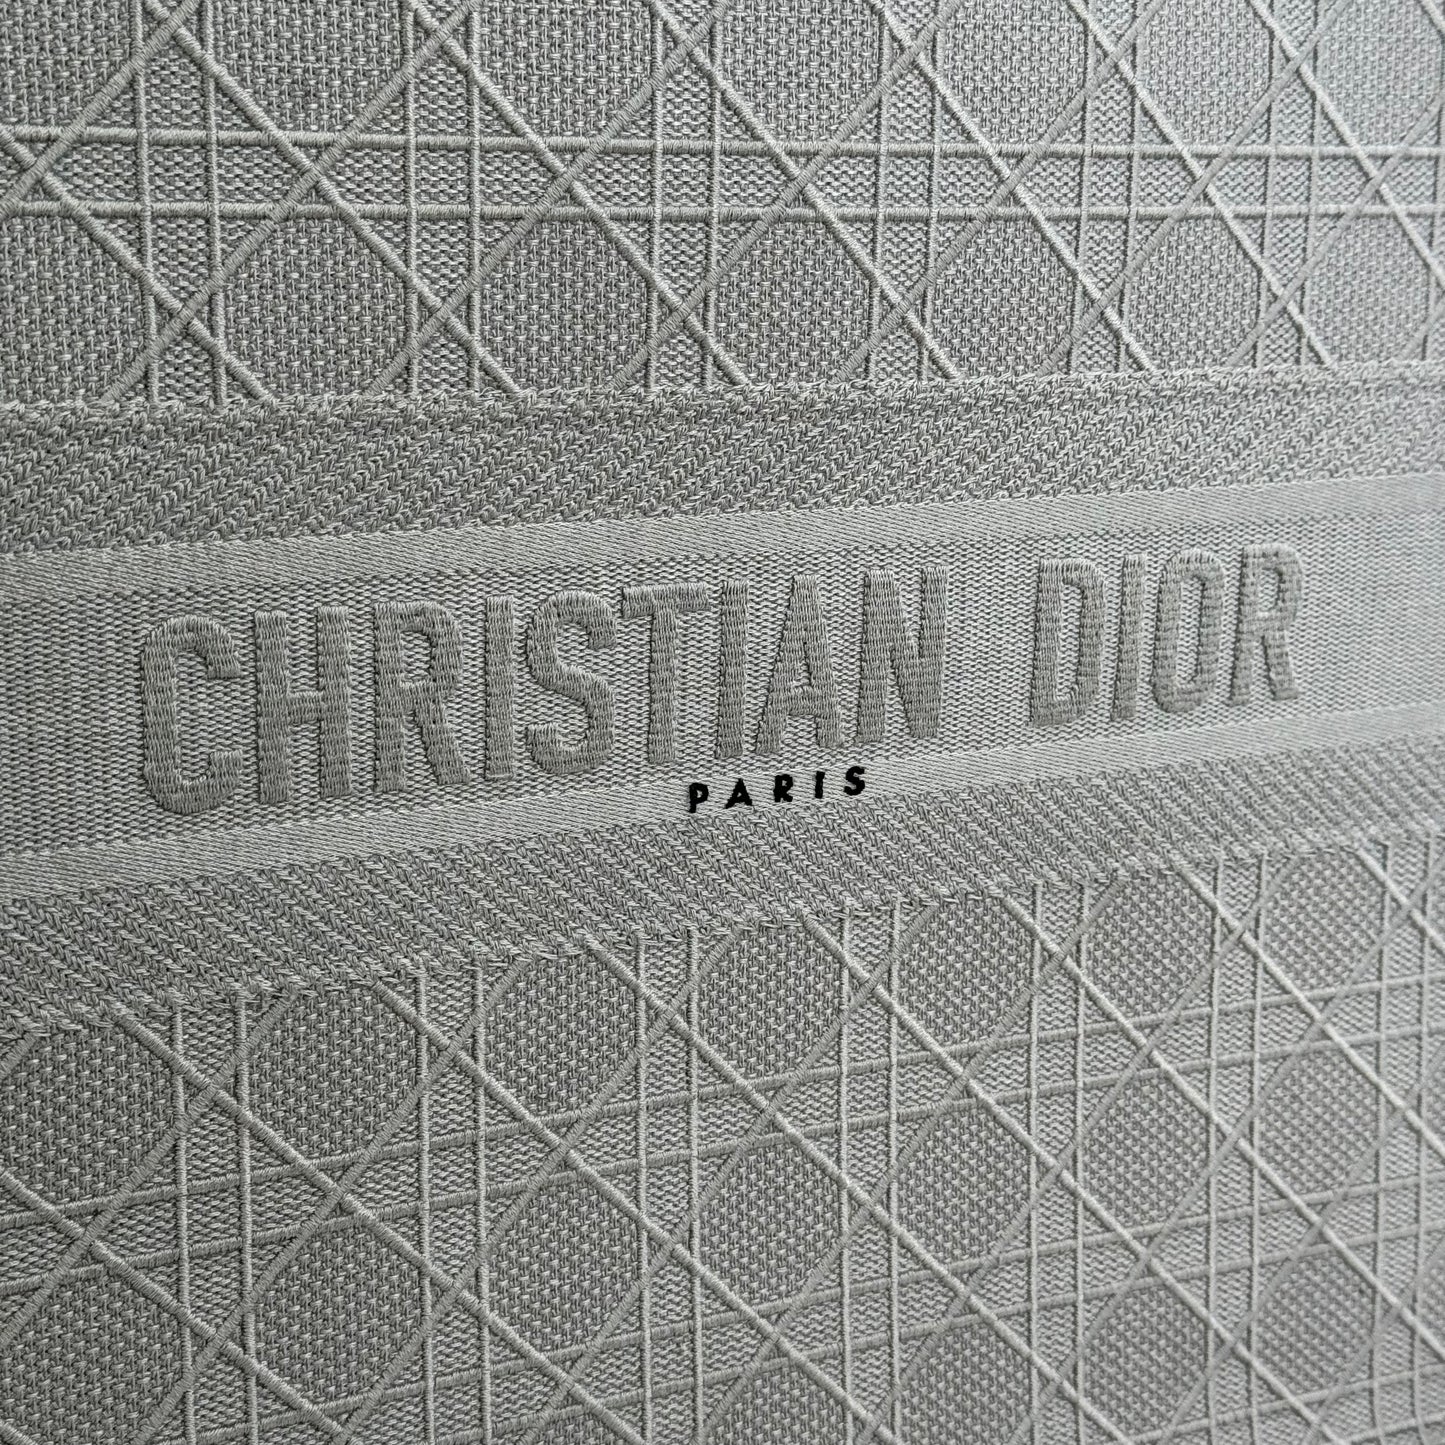 Christian Dior Large Book Tote Bag